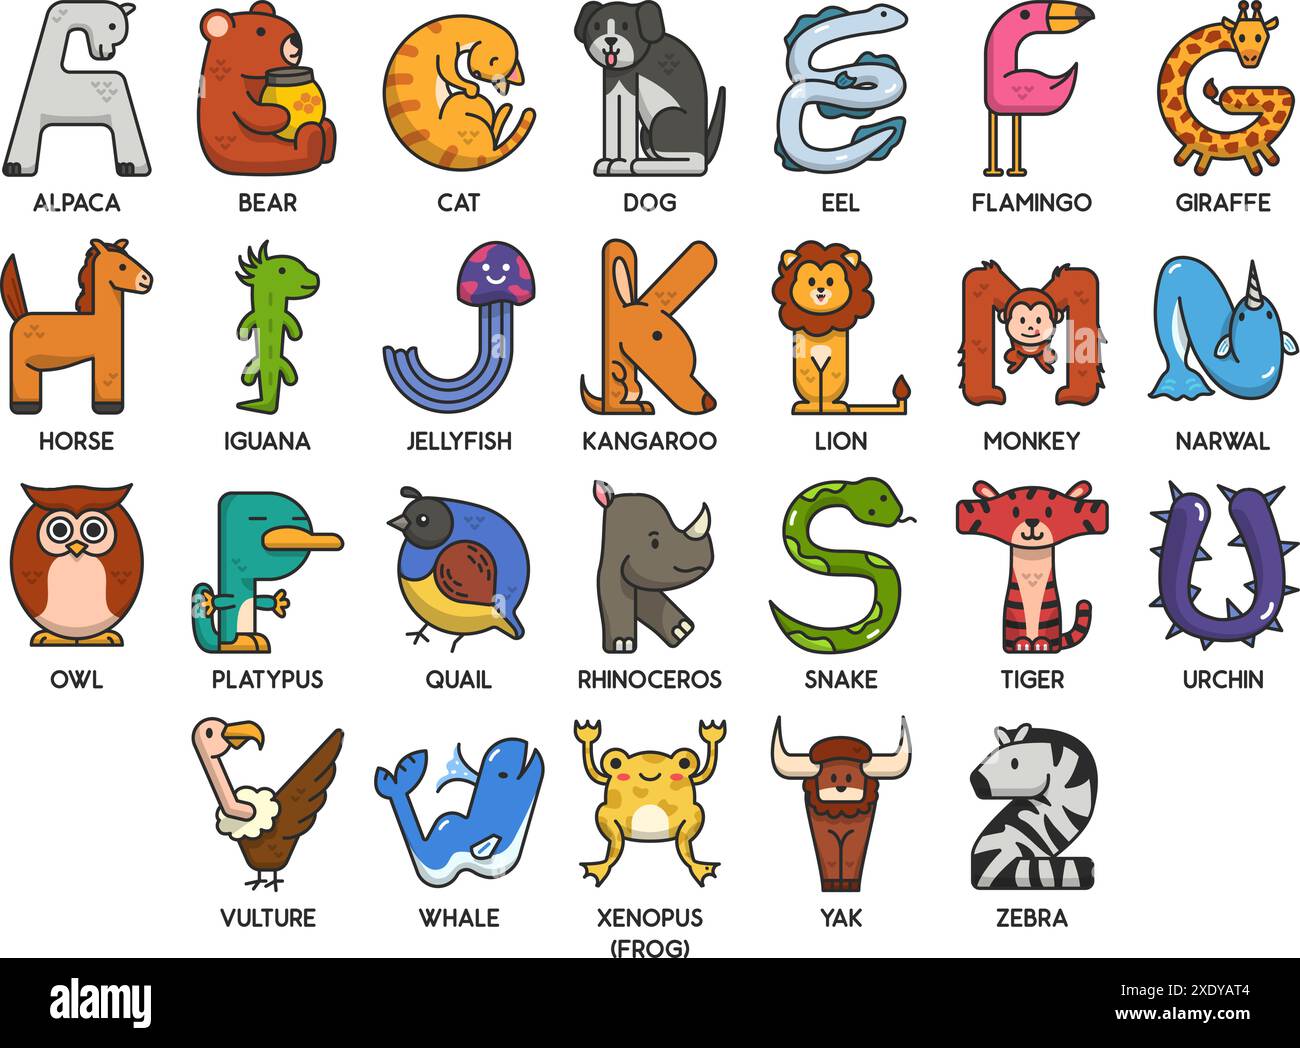 Niedliche Vektortiere in Buchstabenform. ABC-Lernposter für Kinder. Unterhaltsame Lernmethoden mit lustiger, einzigartiger Tierwelt. Stock Vektor